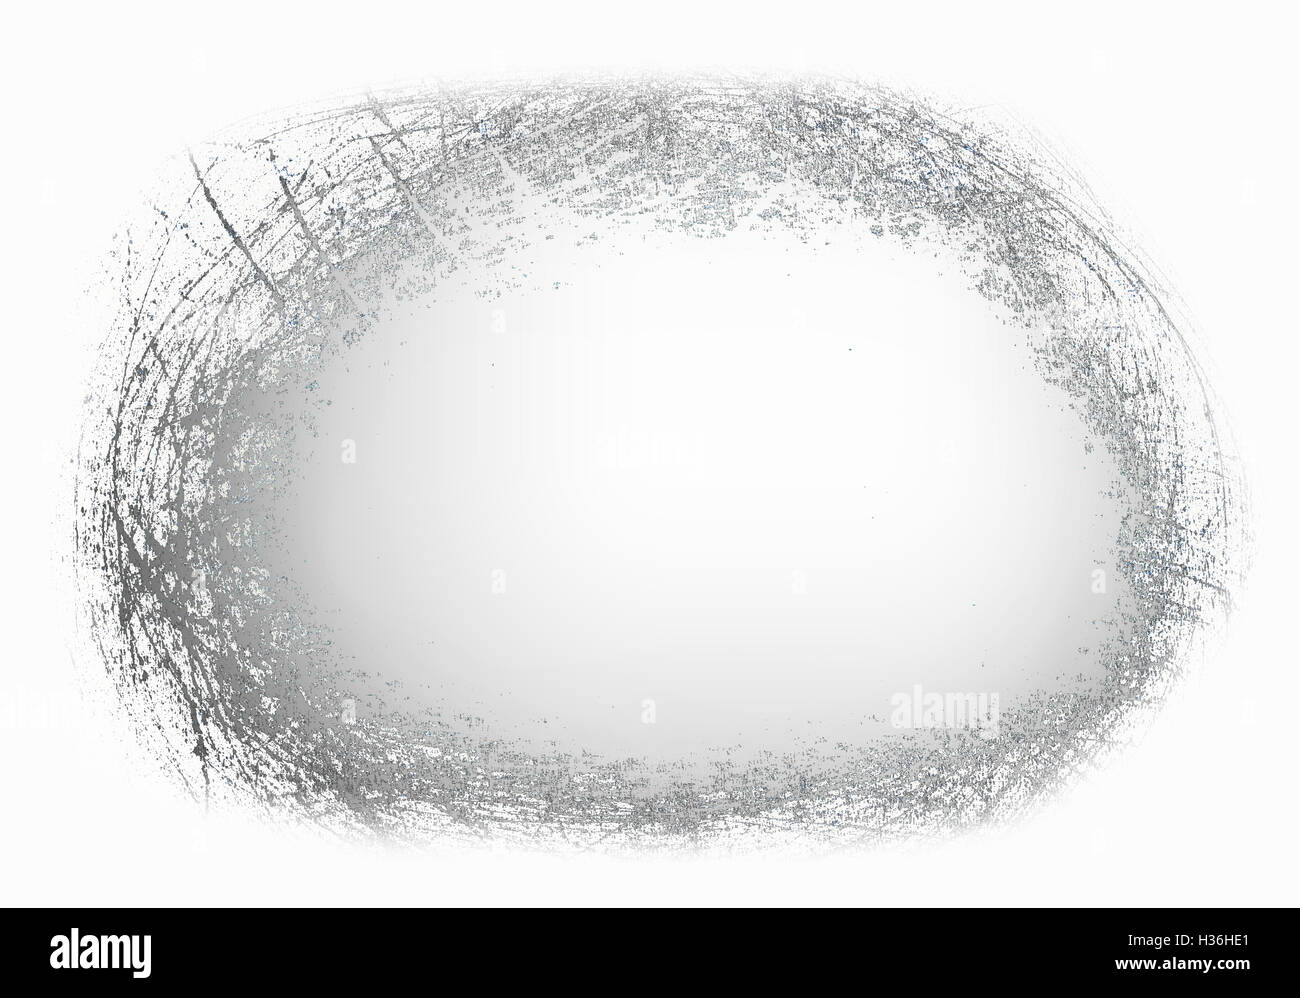 Zusammenfassung Hintergrund - Kratzer auf der Metalloberfläche - Rahmen aus Kritzeleien Stockfoto